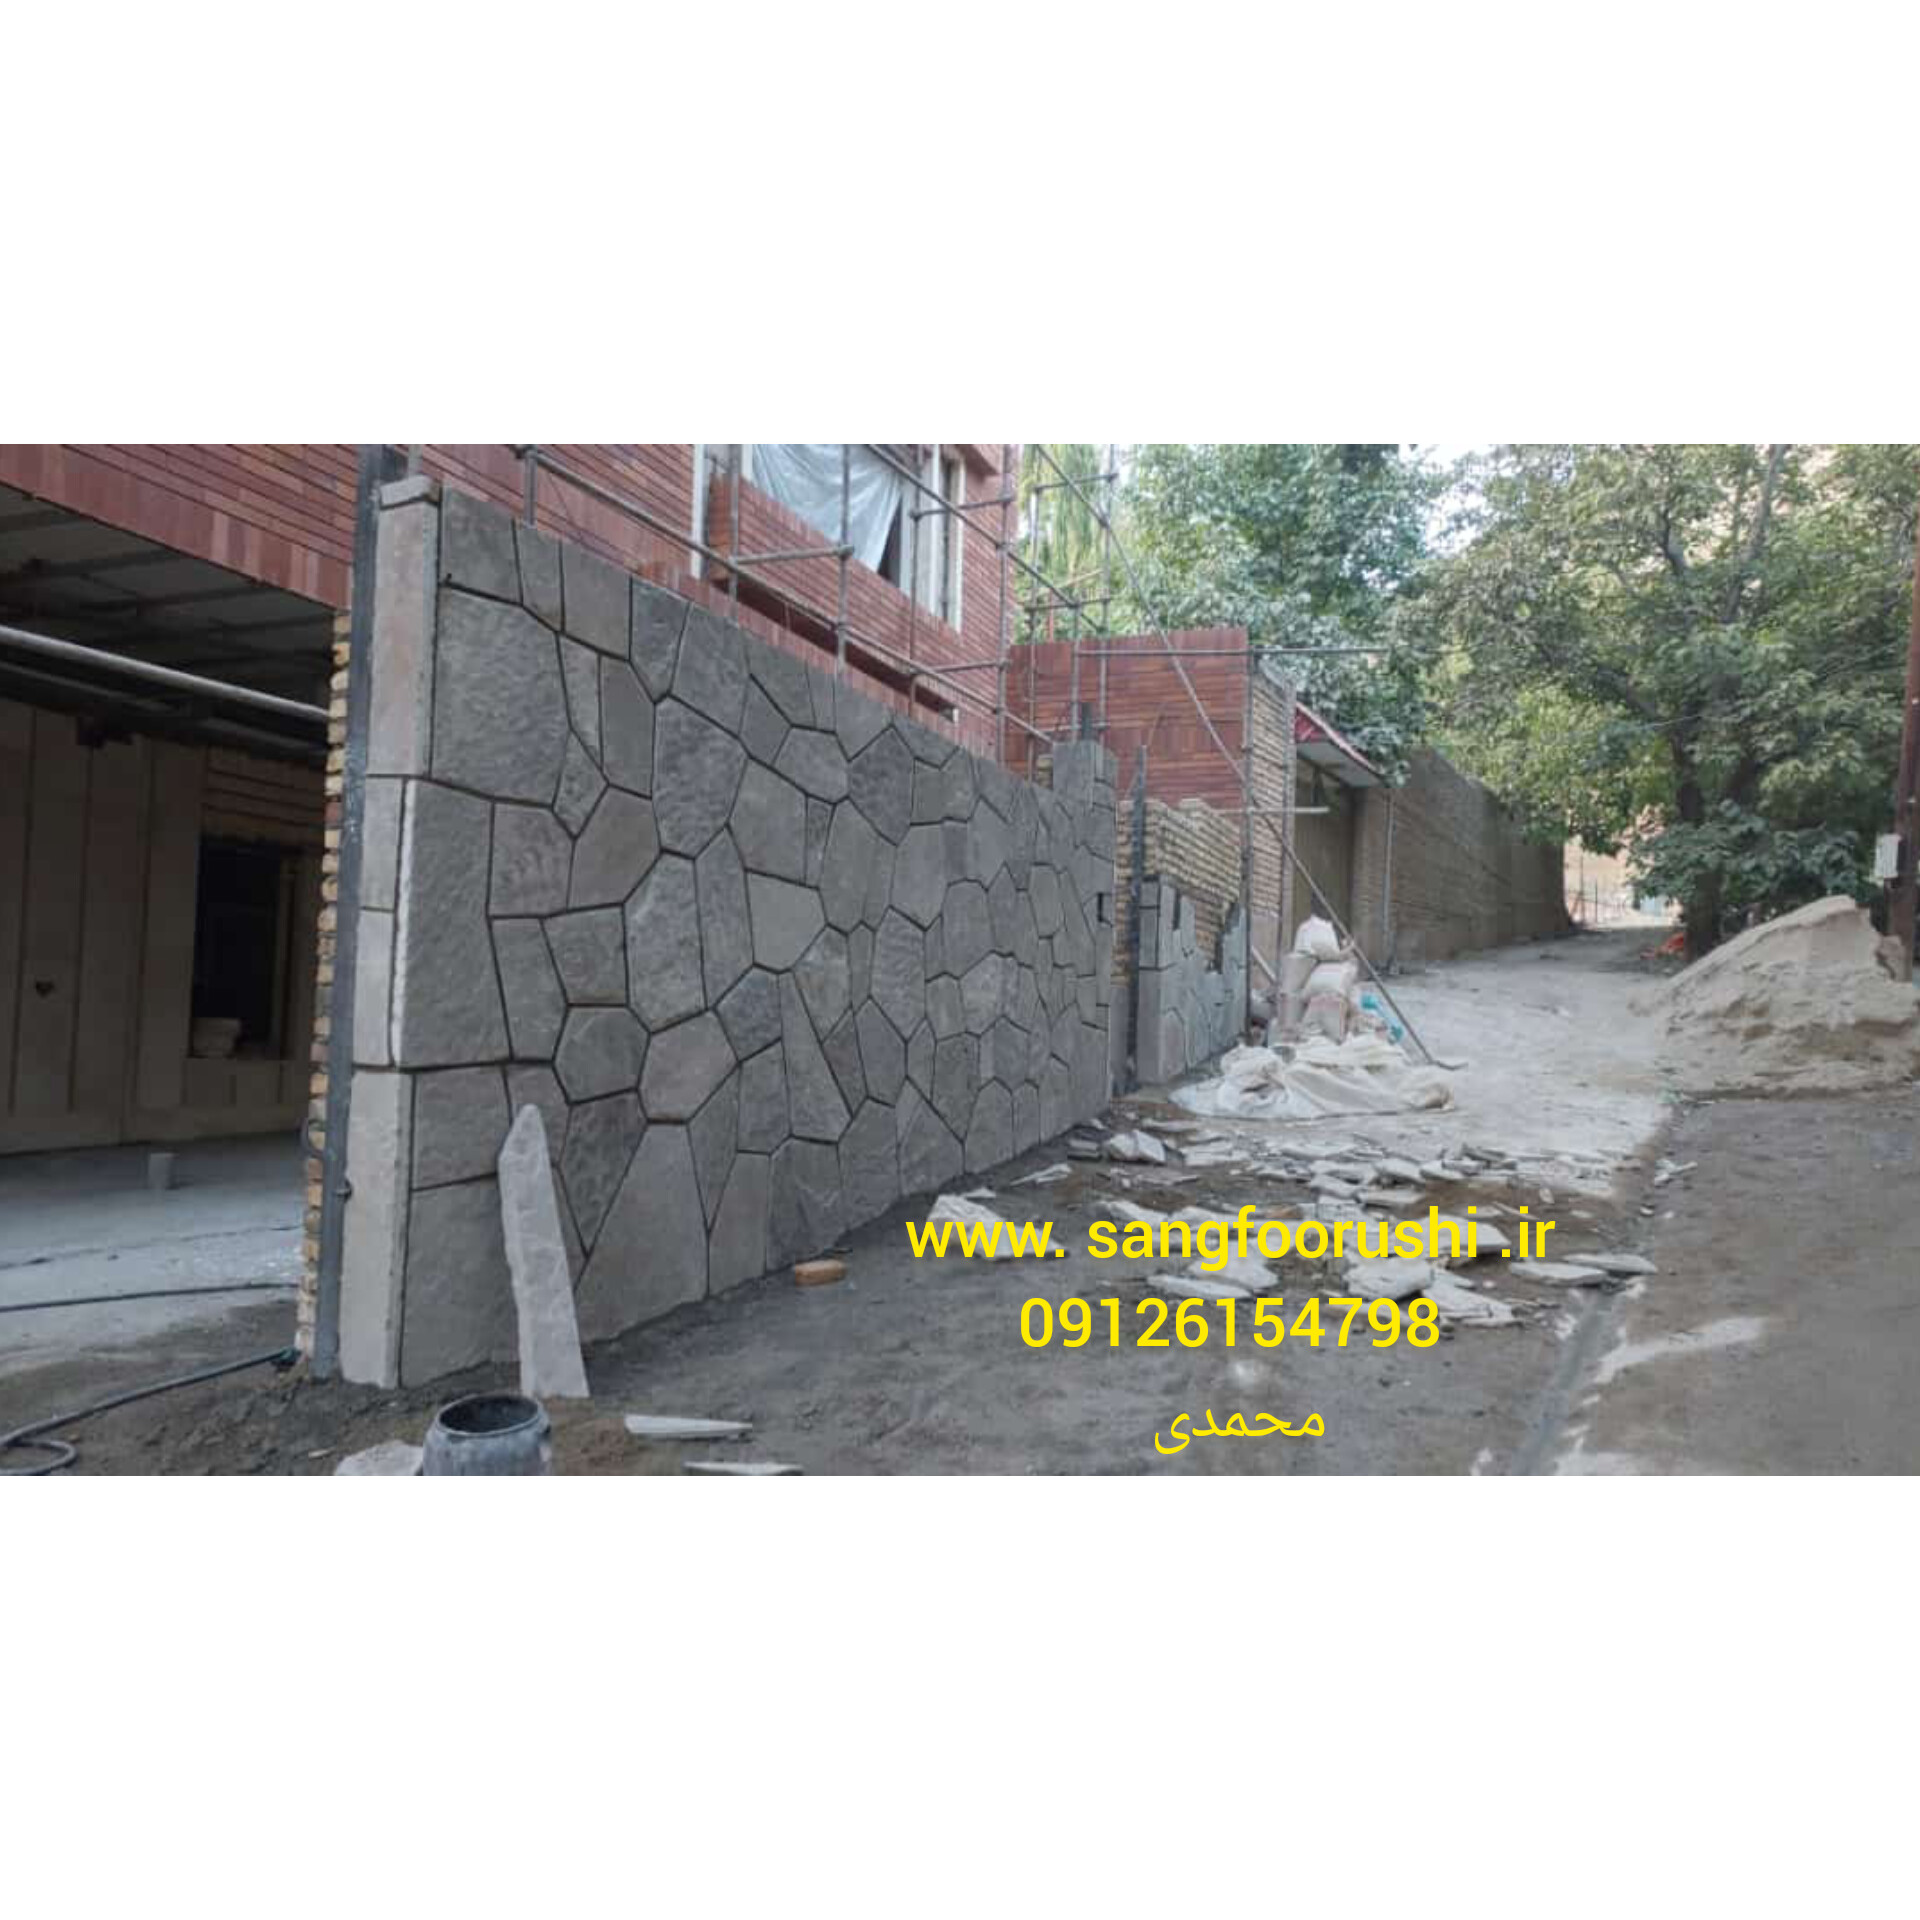 برای اجرای سنگ لاشه و نصب آن بر روی دیوار، مراحل زیر را می‌توانید دنبال کنید: 1. آماده‌سازی سطح: ابتدا باید سطح دیوار را برای نصب سنگ لاشه آماده کنید. اگر دیوار صاف نیست، ممکن است نیاز به ترازکاری داشته باشد. همچنین، از خاک و آلودگی‌ها پاکسازی کنید و سطح را صاف کنید. 2. برش و نصب سنگ لاشه: سنگ لاشه را به شکل‌ها و اندازه‌های مورد نظر برش دهید. این کار می‌تواند با استفاده از ابزارهای برش سنگ مانند ماشین برش سنگ، دستگاه تراش سنگ و یا دستیابی به خدمات سفارشی برش سنگ انجام شود. سپس سنگ لاشه را با استفاده از چسب سنگی مناسب، به دیوار متصل کنید. 3. رعایت الگوها و فاصله‌ها: در نصب سنگ لاشه، معمولاً الگوها و فاصله‌های خاصی بین سنگ‌ها رعایت می‌شود. این الگوها و فاصله‌ها می‌توانند به تنوع و زیبایی نهایی نصب کمک کنند. در هر مرحله از نصب، از ابزارهای اندازه‌گیری استفاده کنید تا از قرارگیری صحیح سنگ‌ها اطمینان حاصل کنید. 4. چسباندن سنگ‌ها: سنگ لاشه را با استفاده از چسب سنگی مناسب به دیوار بچسبانید. اطمینان حاصل کنید که سطح پشتی سنگ و سطح دیوار تمیز و خشک است. همچنین، از روش‌های قوطی‌های چسباندن سنگ مانند استفاده از الگوهای چسباندن یا استفاده از قالب‌های چسباندن استفاده کنید تا بهترین نتیجه را بدست آورید. 5. پرکردن فاصله‌ها: پس از چسباندن سنگ‌ها، فاصله‌های میان سنگ‌ها را با استفاده از مواد پر کننده مناسب پر کنید. این مواد می‌تواند مخلوطی از چسب سنگی و مواد پرکننده مانند ماسه و سیمان باشد. پس از پر کردن فاصله‌ها، سطح را صاف کنید تا نتیجه نهایی زیبا و یکنواخت باشد. 6. پاکسازی و تمیزکاری: پس از اتمام نصب سنگ لاشه، سطح سنمراقبت و تمیزکاری لازم است. پاکسازی سنگ لاشه و حذف هر گونه لکه و آلودگی از سطح با استفاده از محلول‌های شستشوی مناسب و ابزارهای نرم و غیرخشن مانند برس نرم صورت گیرد. توجه داشته باشید که نصب سنگ لاشه می‌تواند مراحل پیچیده‌ای داشته باشد و نیاز به تجربه و مهارت داشته باشد. بهتر است با استفاده از کارگران و تیم‌های مجرب یا متخصصان حرفه‌ای در زمینه نصب سنگ لاشه همکاری کنید تا نتیجه بهتری به دست آورید. همچنین، رعایت دستورالعمل‌های سازنده سنگ لاشه و محصولات چسباندنی استفاده شده نیز بسیار مهم است.